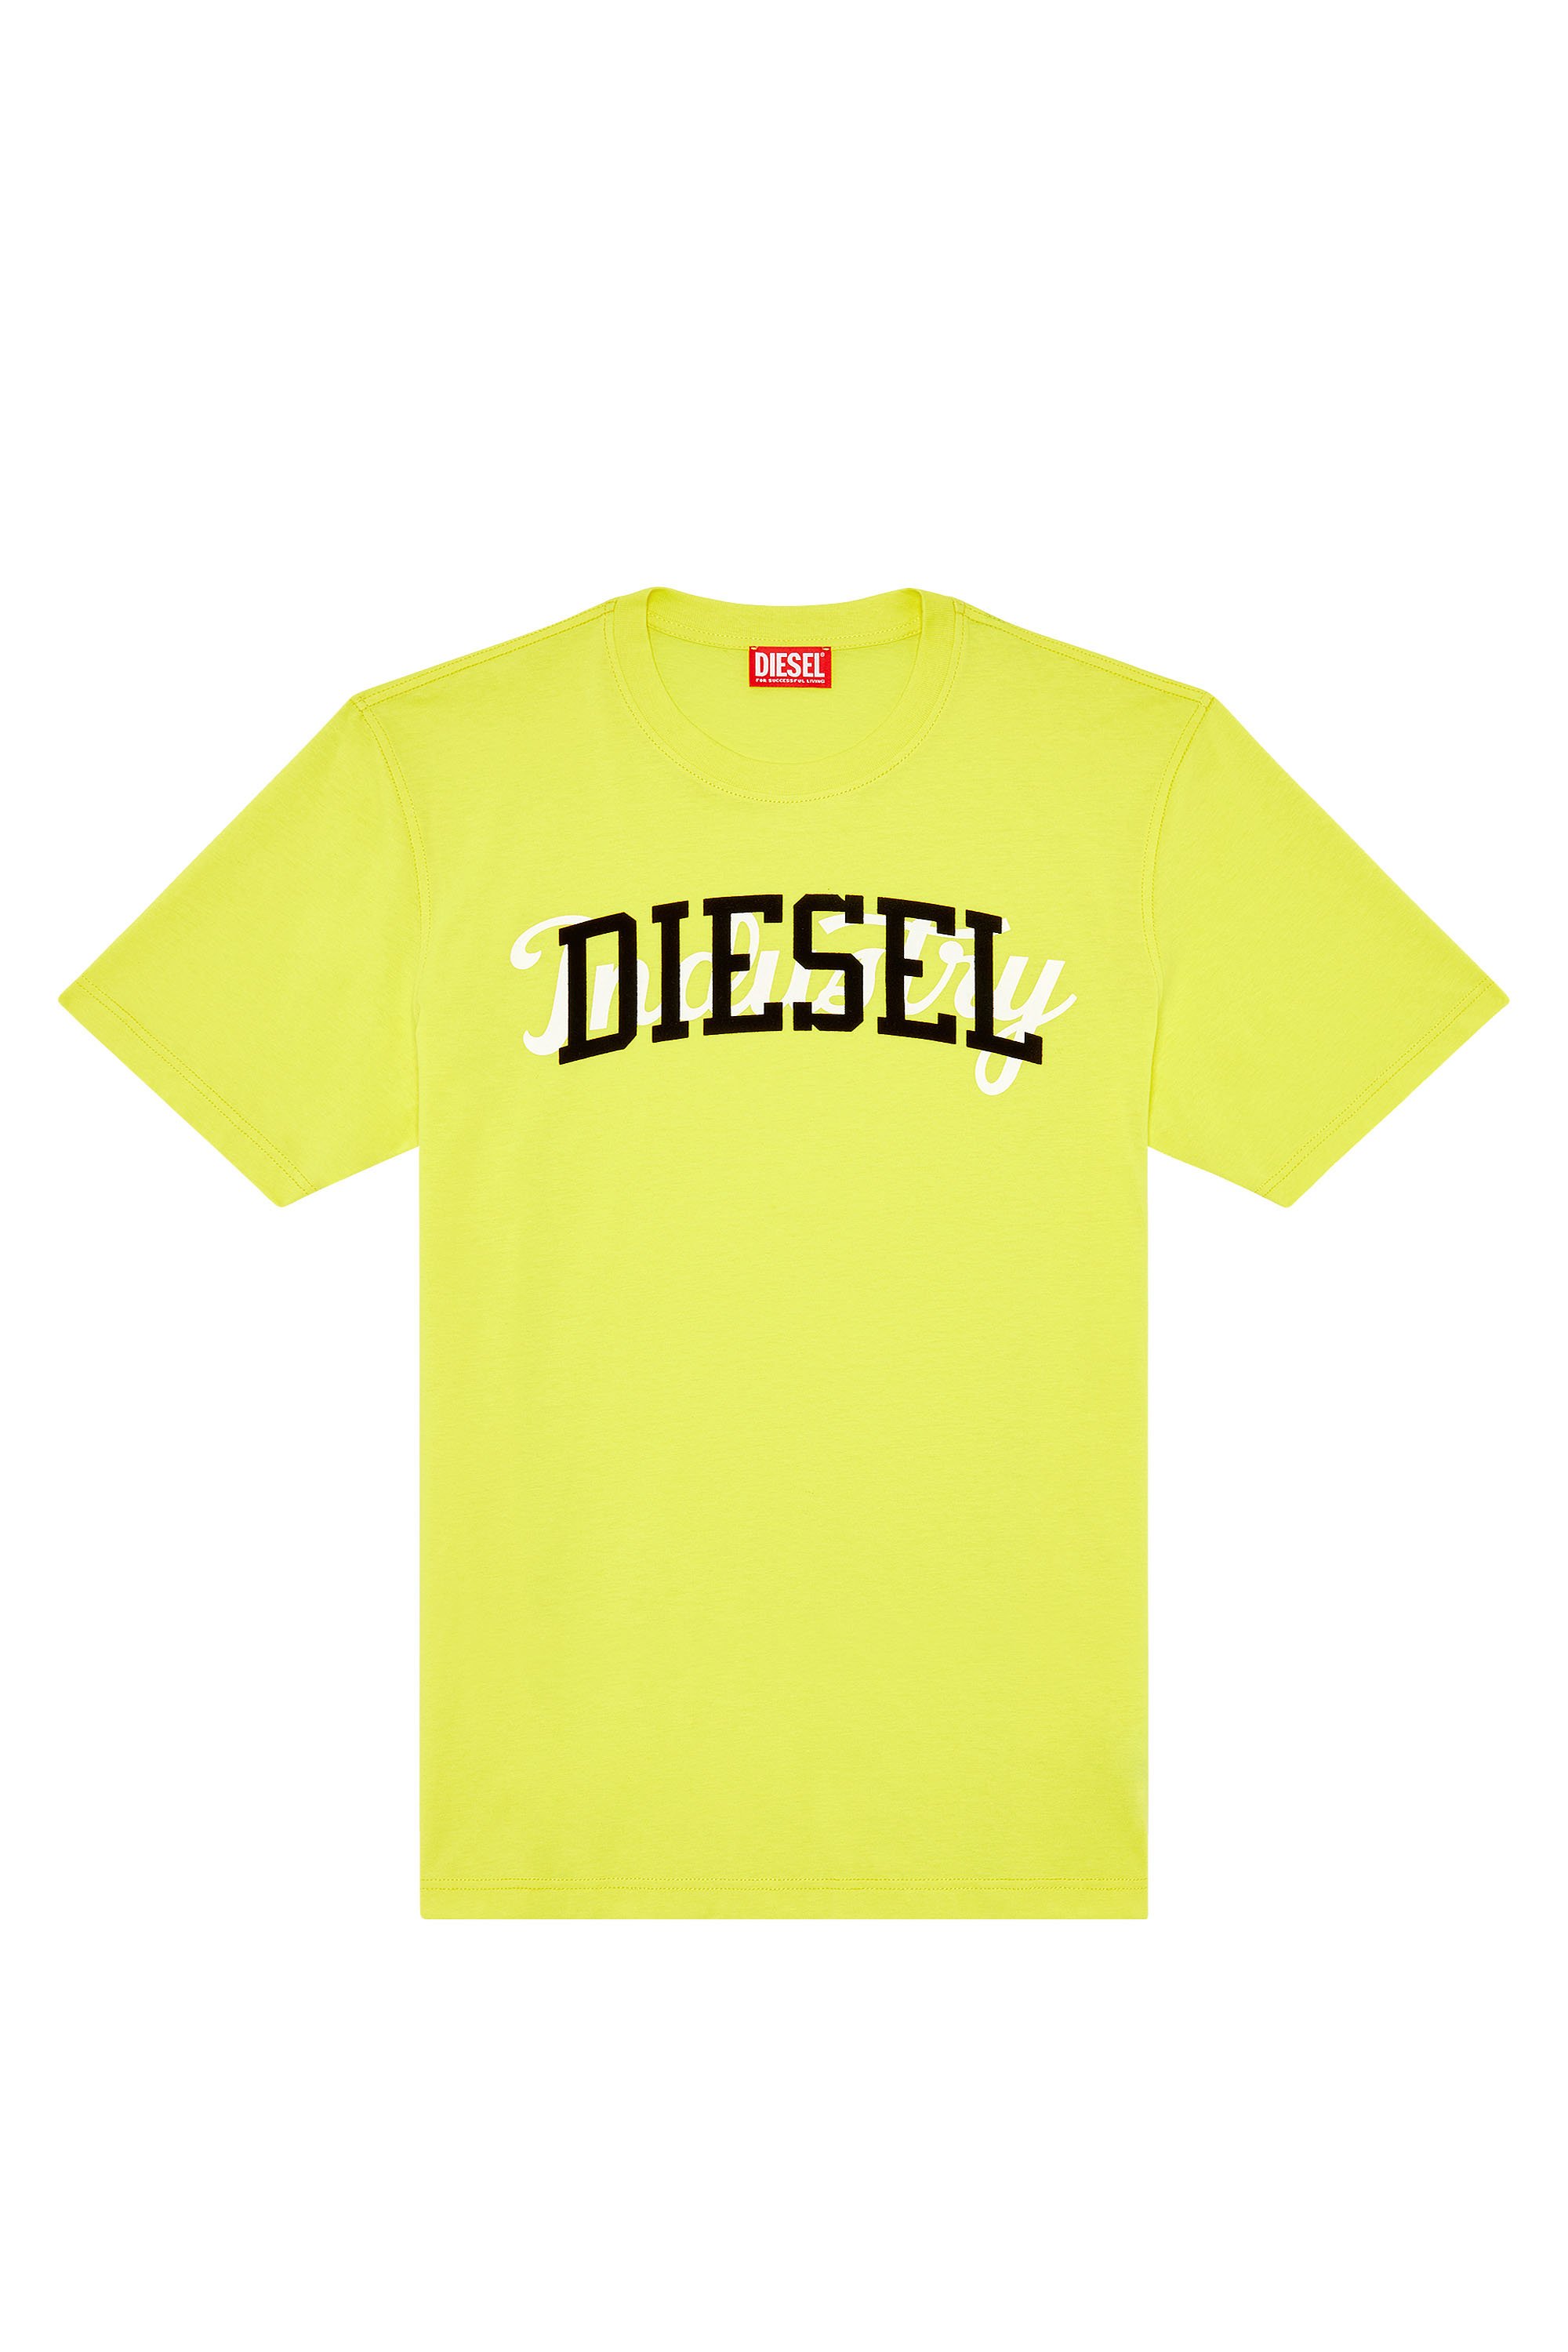 Diesel - T-JUST-N10, Yellow - Image 4